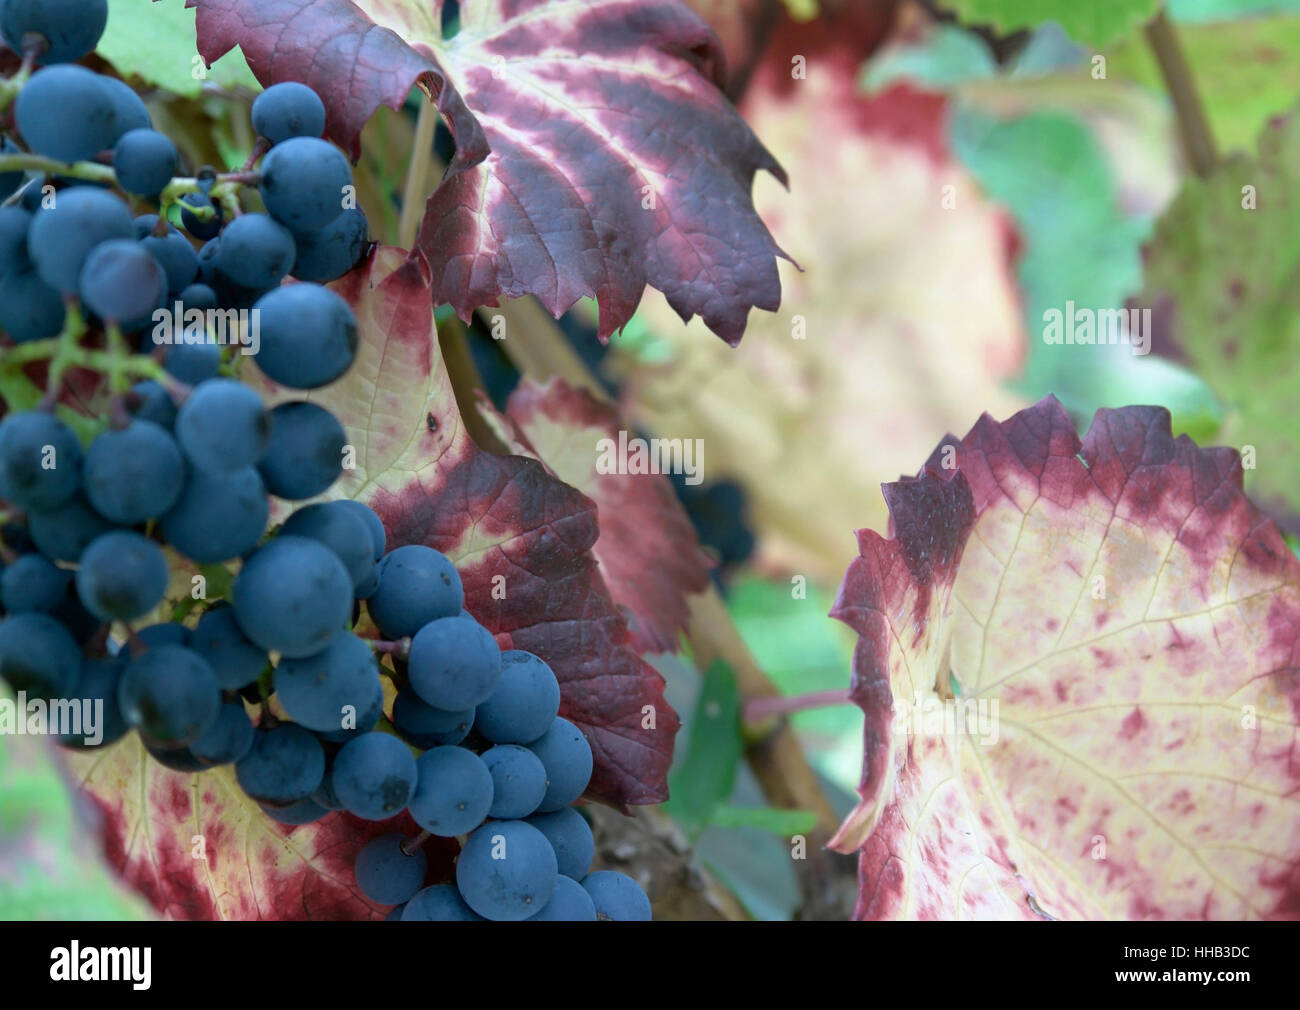 Dettaglio delle uve blu e in autunno le foglie di vite Foto Stock